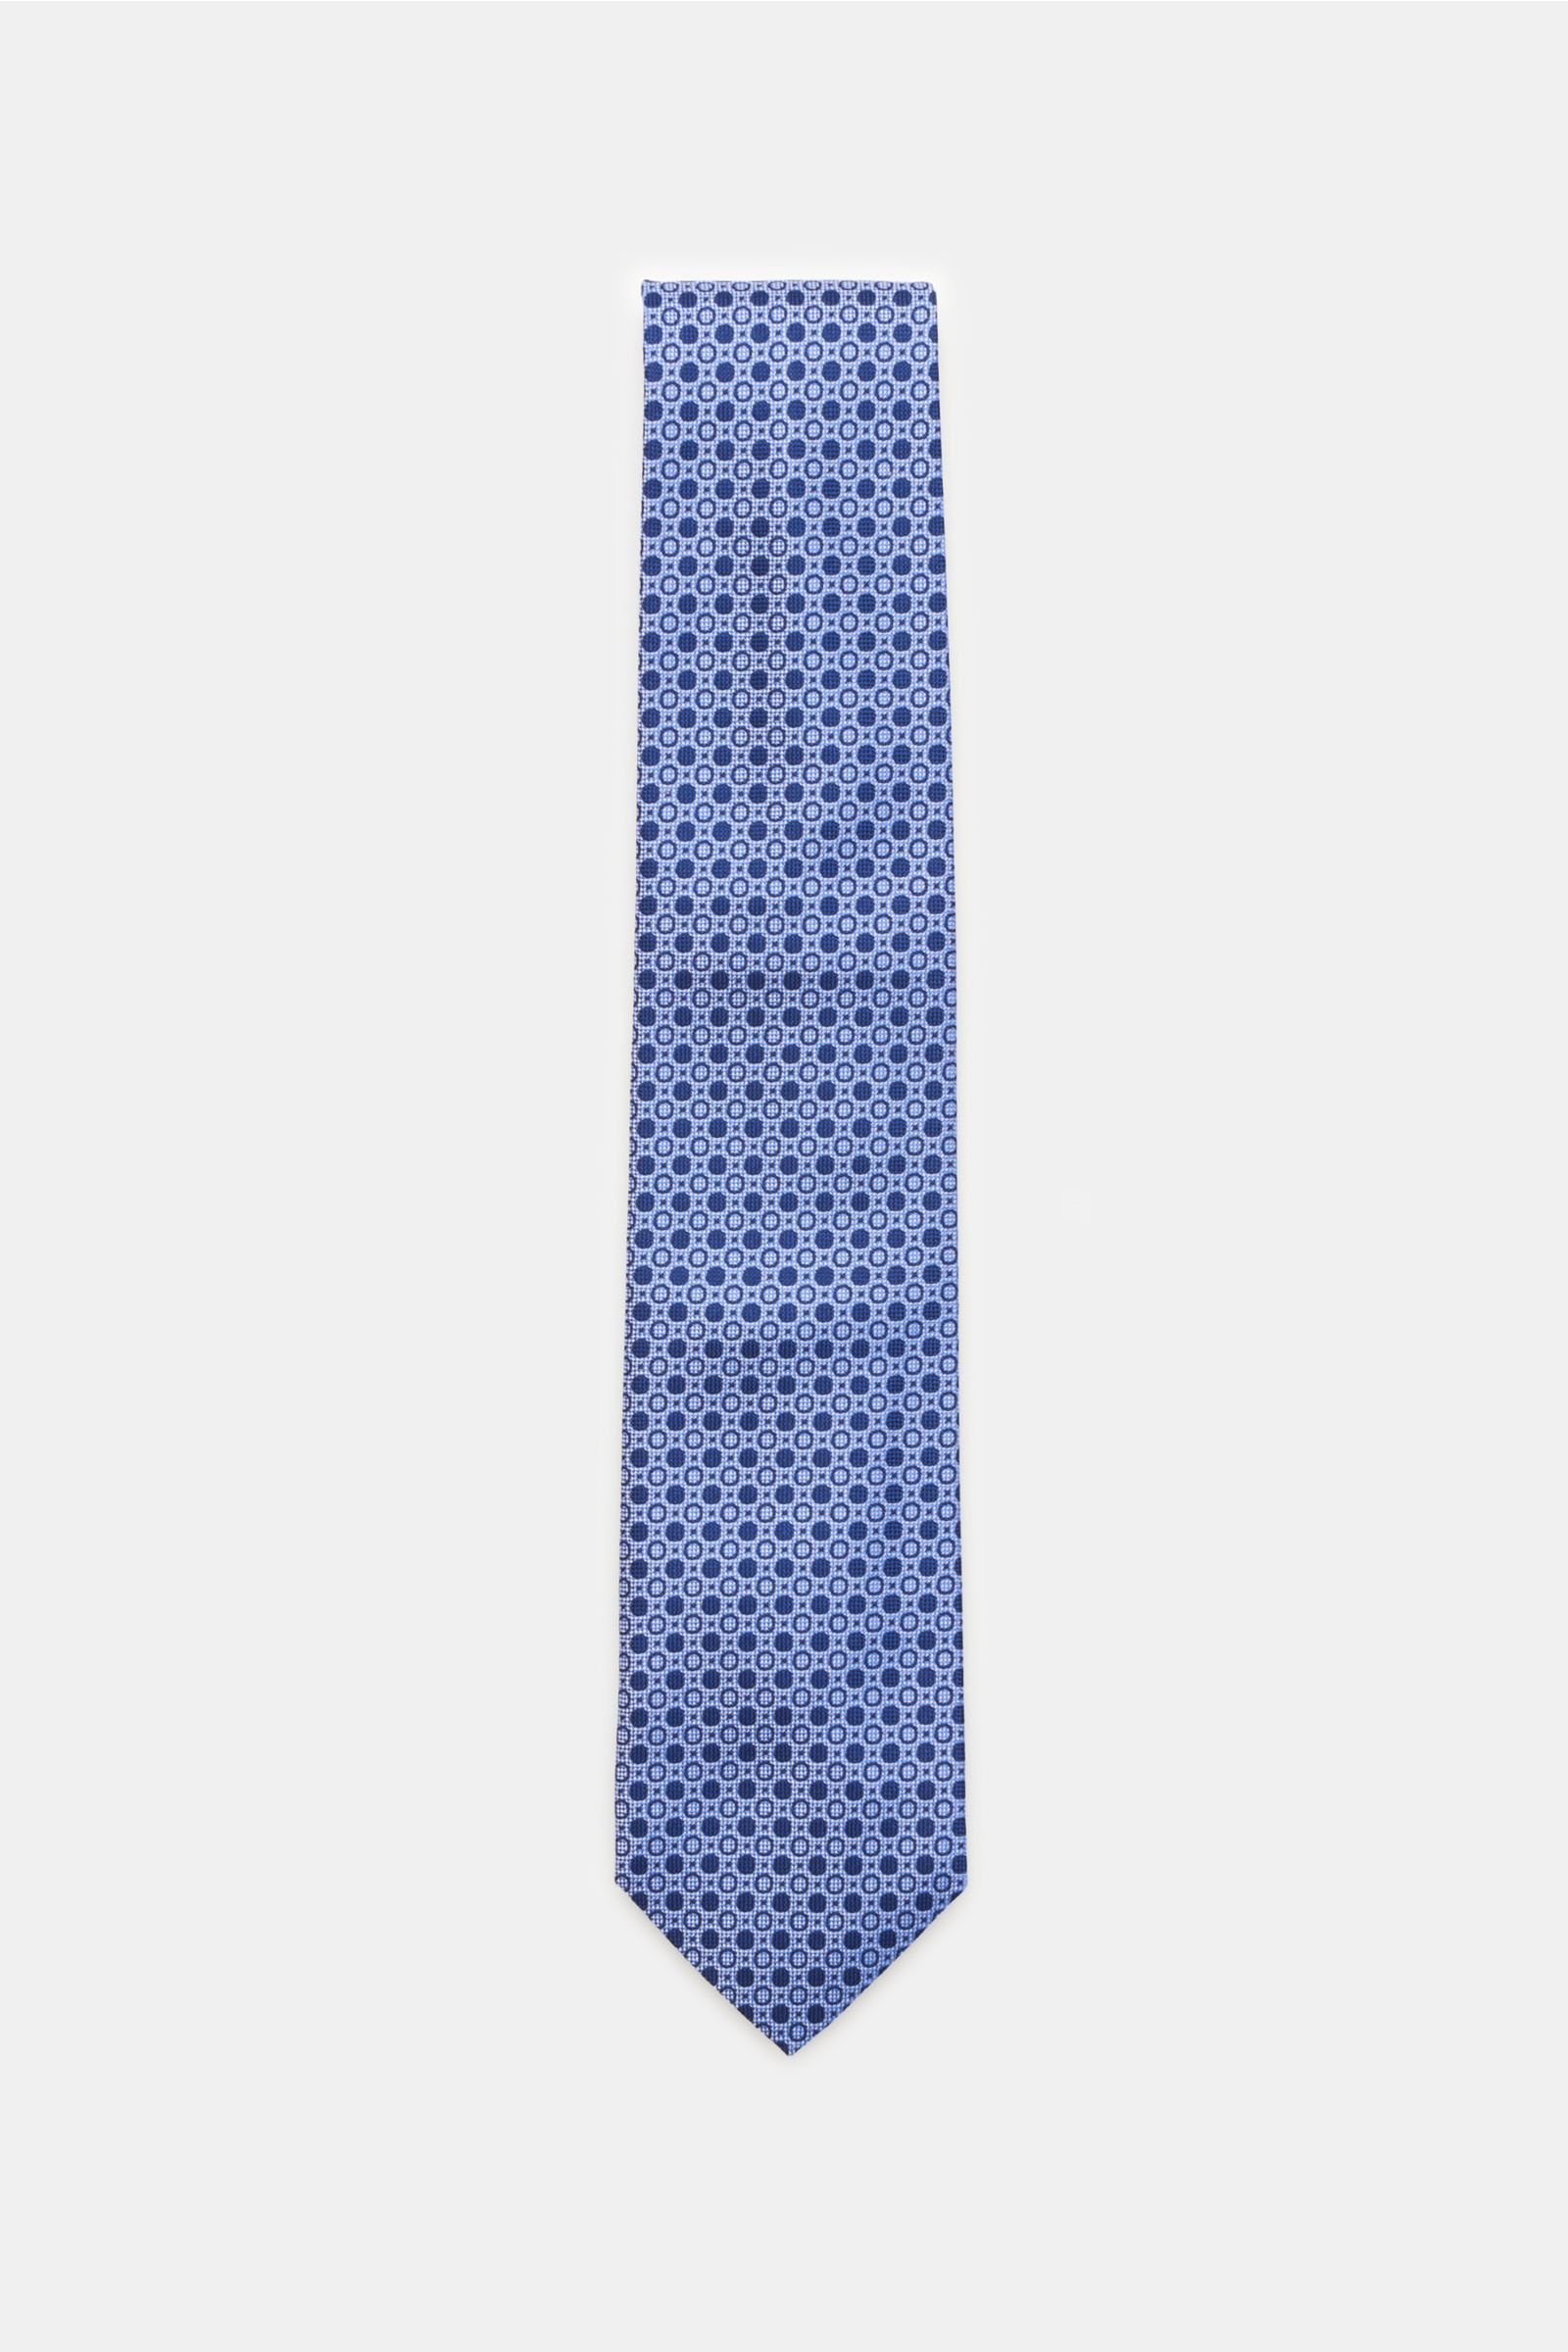 Silk tie dark blue/navy with polka dots